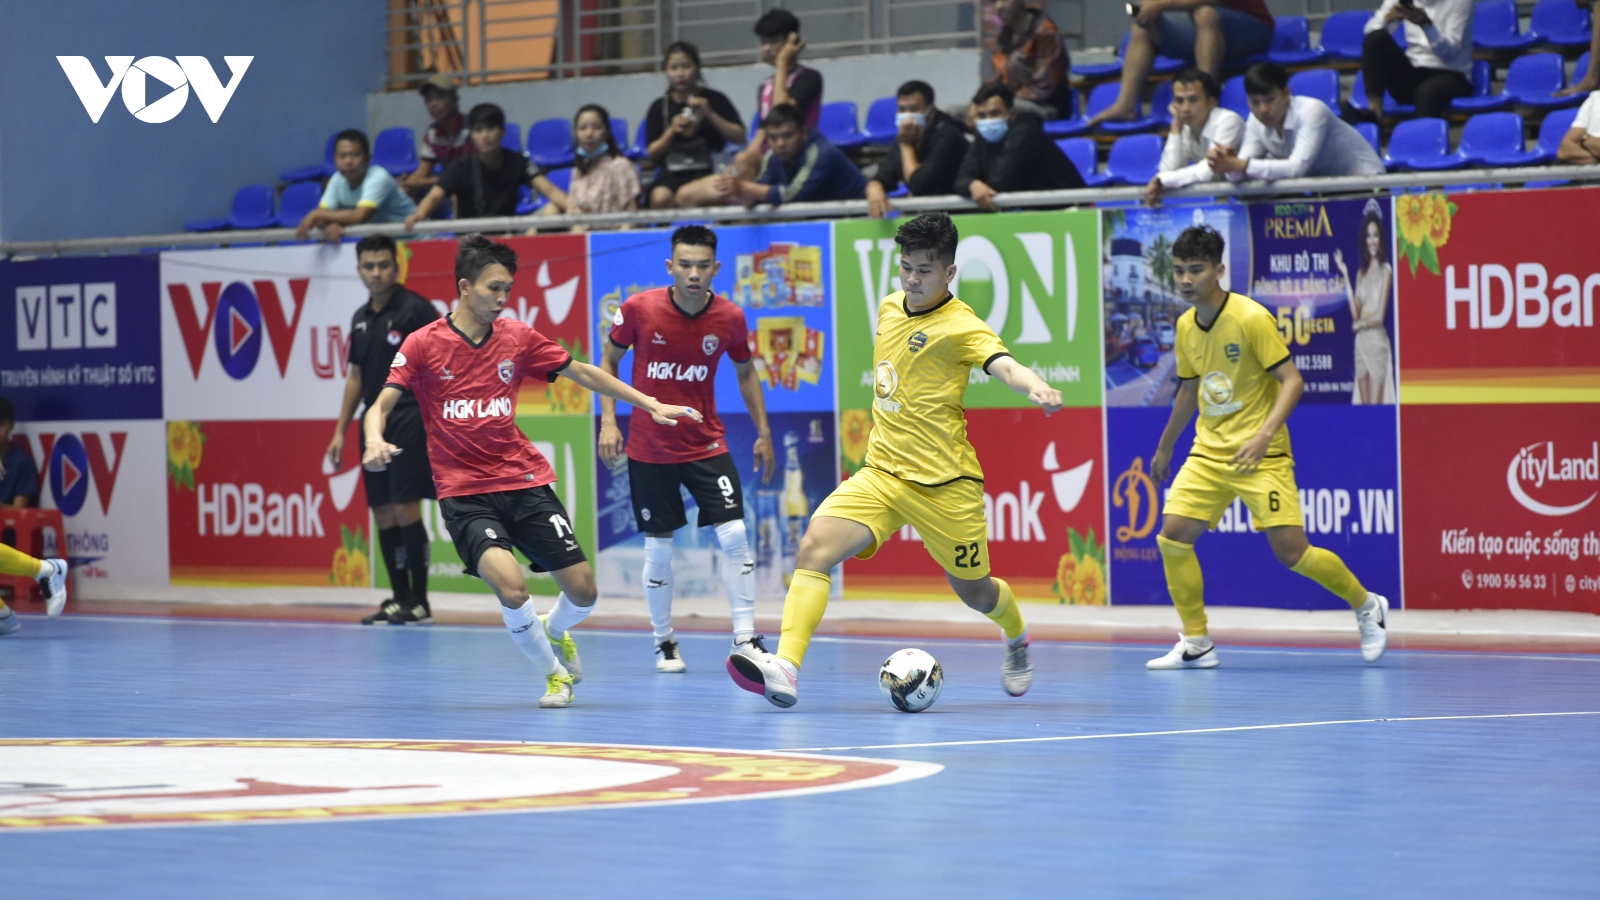 Giải Futsal HDBank VĐQG 2021: Chủ nhà Hưng Gia Khang Đắk Lắk thất bại đáng tiếc